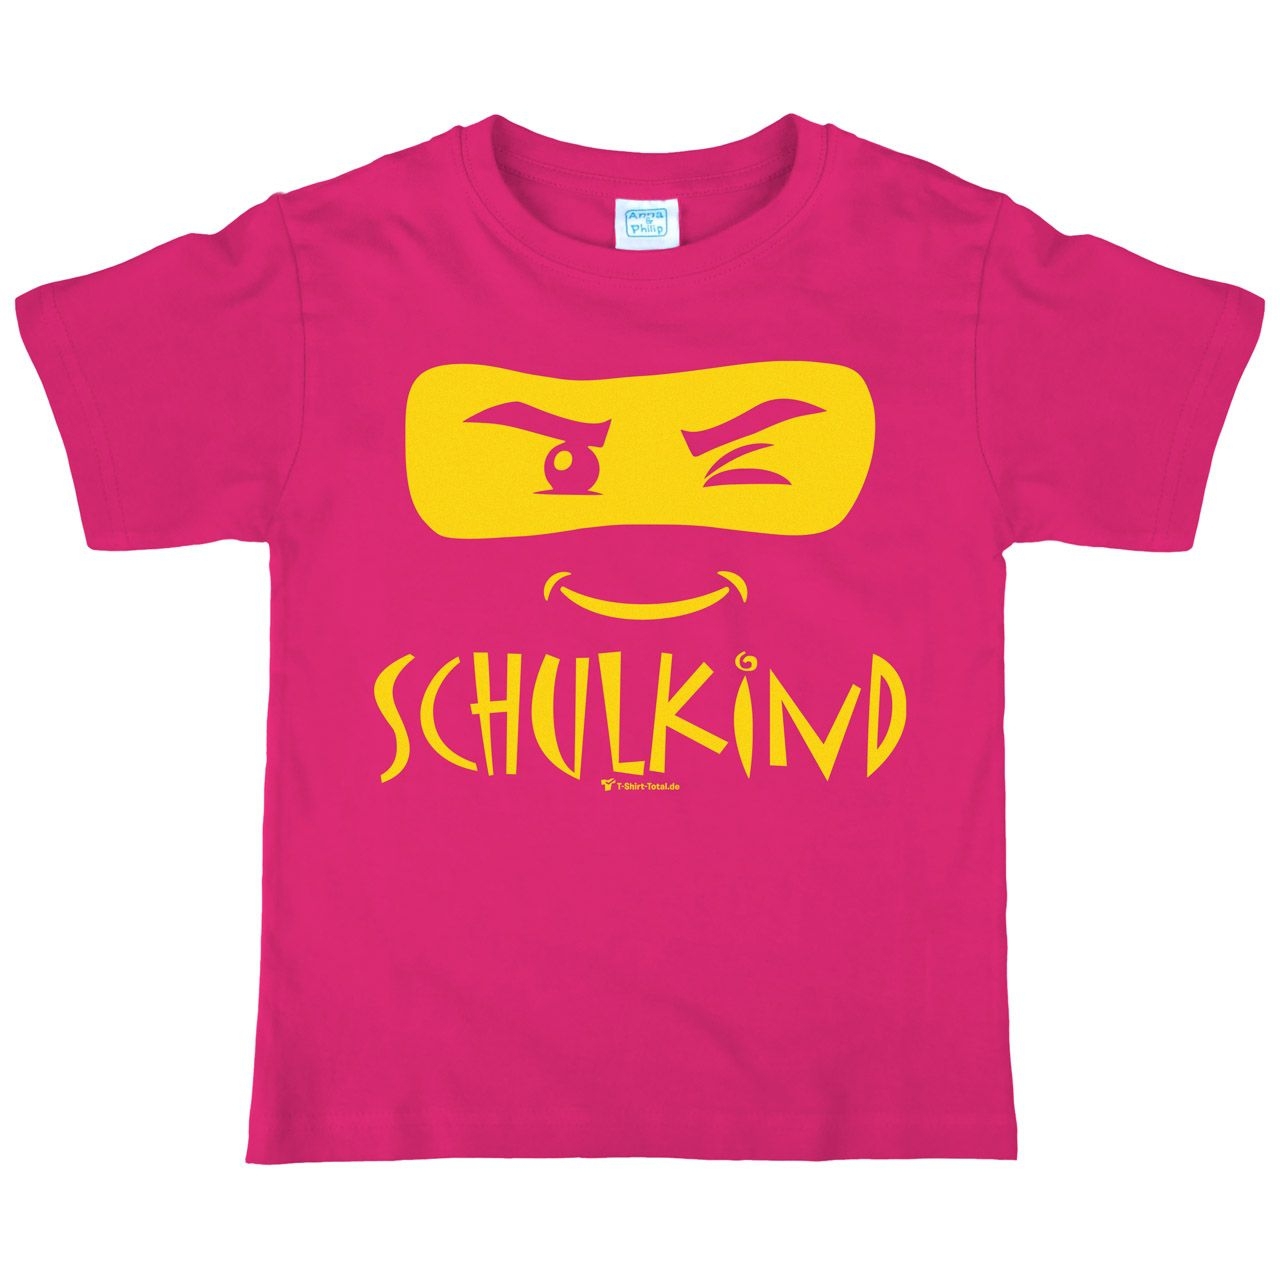 Schulkind Maske Kinder T-Shirt mit Name pink 122 / 128